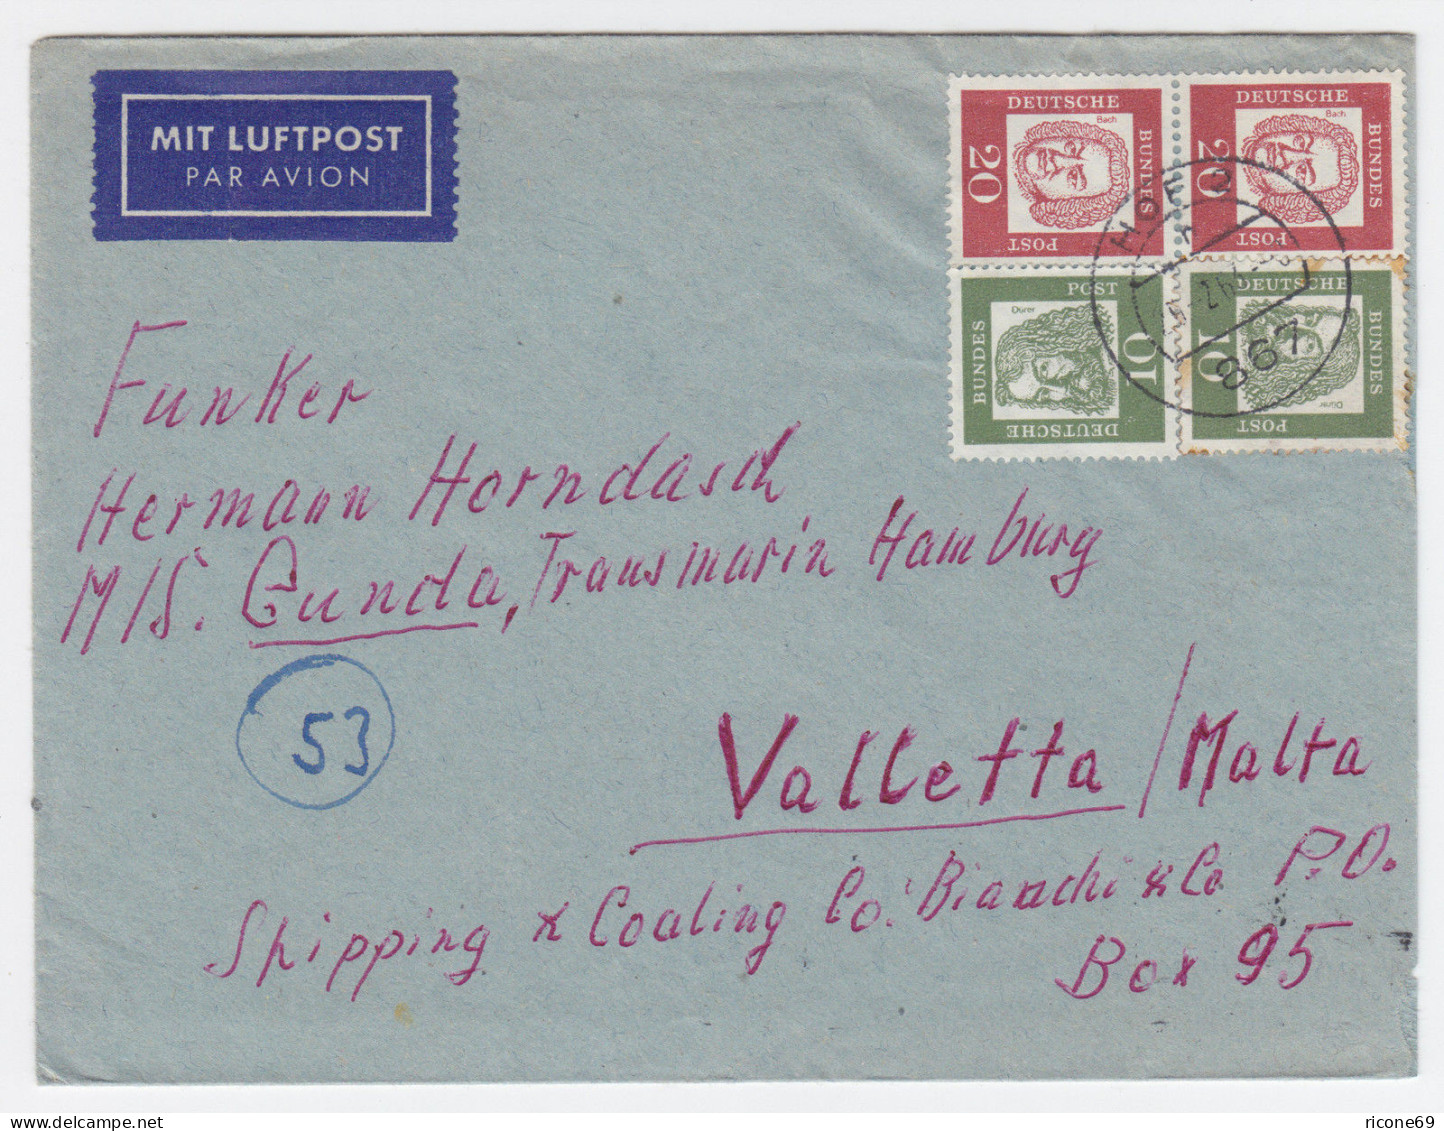 BRD 1963, 20+20+10+10 Pf. Auf Luftpost Brief V. Hof N. Malta. Destination! #1807 - Lettres & Documents